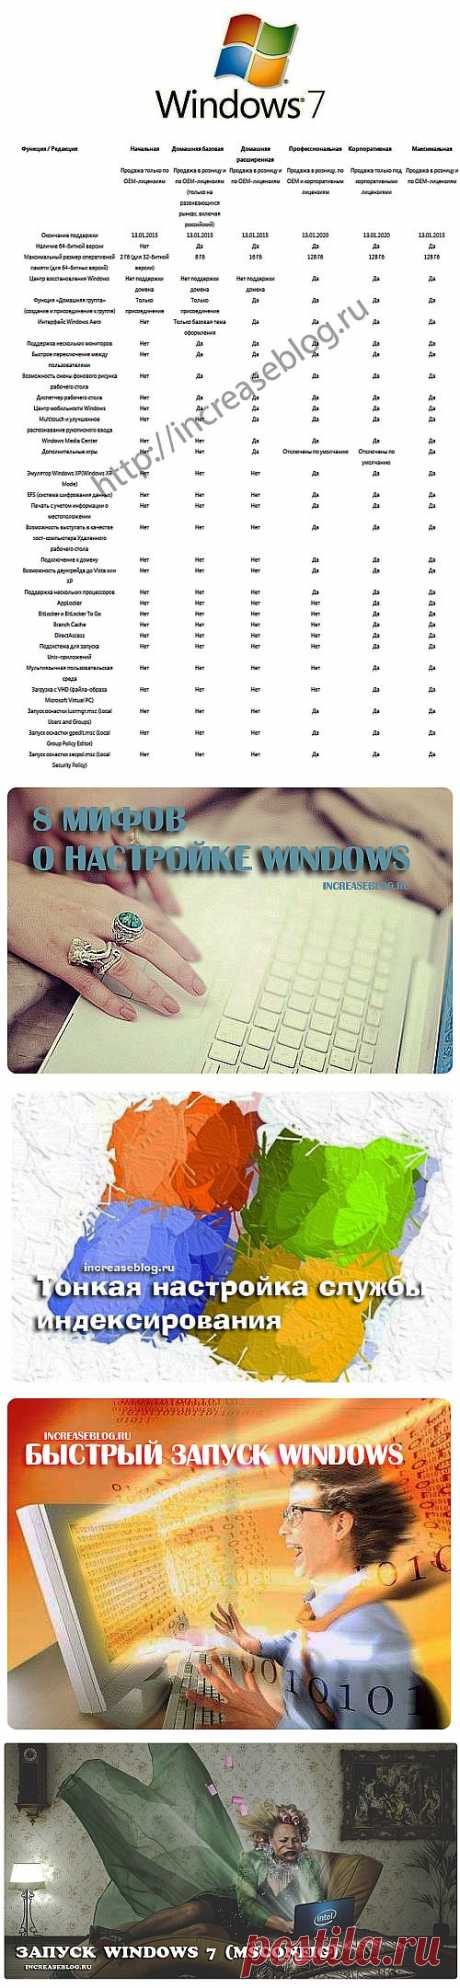 Windows | Настройка программ
Тут про настройку программ